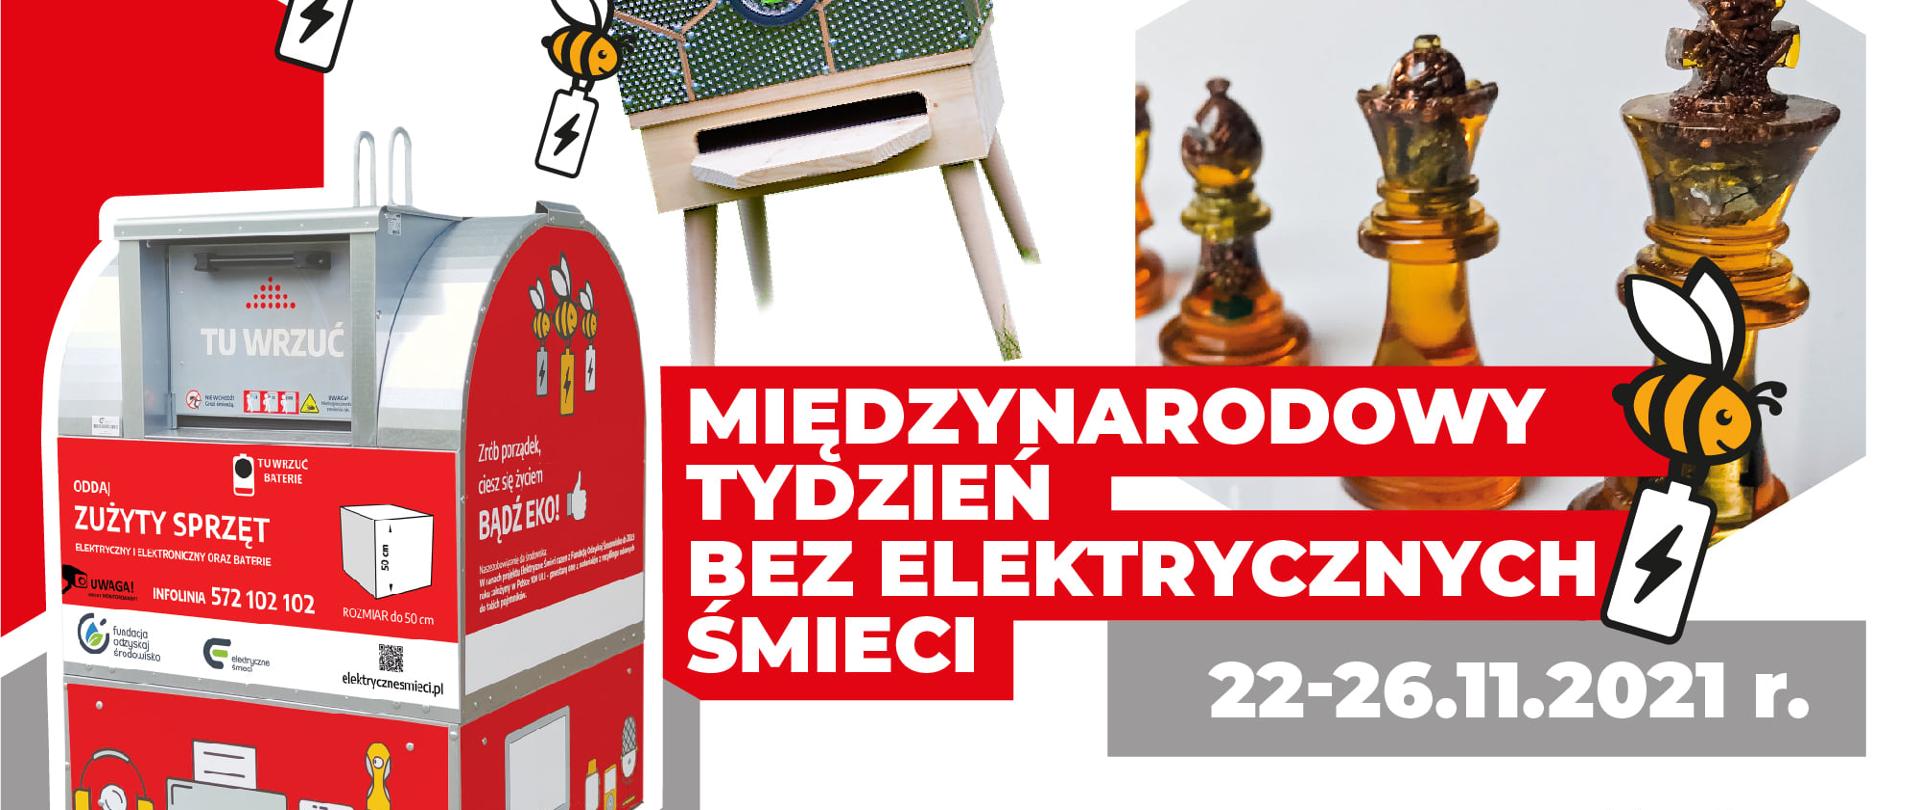 Plakat akcji "Międzynarodowy tydzień bez elektrycznych śmieci". Na plakacie widać czerwony pojemnik na elektrośmieci, nad którym widnieją dwie emotikony w formie pszczół, które trzymają baterie. Na środku plakatu umieszczone zdjęcie ula, a po prawej stronie figurki szachowe. Na grafice znajduje się również napis "Międzynarodowy tydzień bez elektrycznych śmieci 22-26.11.2021 r.".